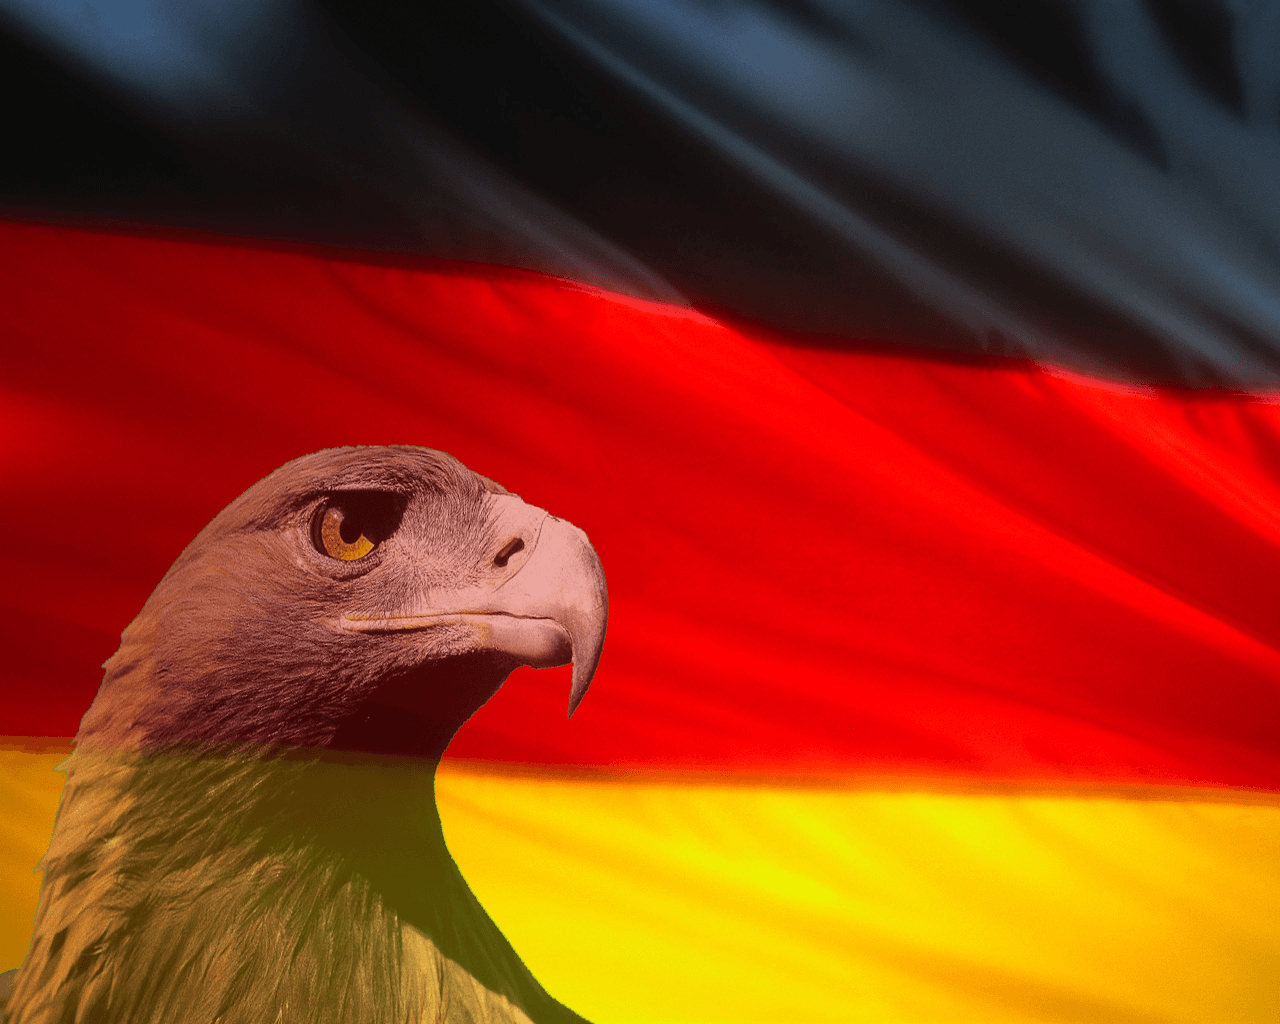 Deutschland, Fick Ja! - added by plokix at German